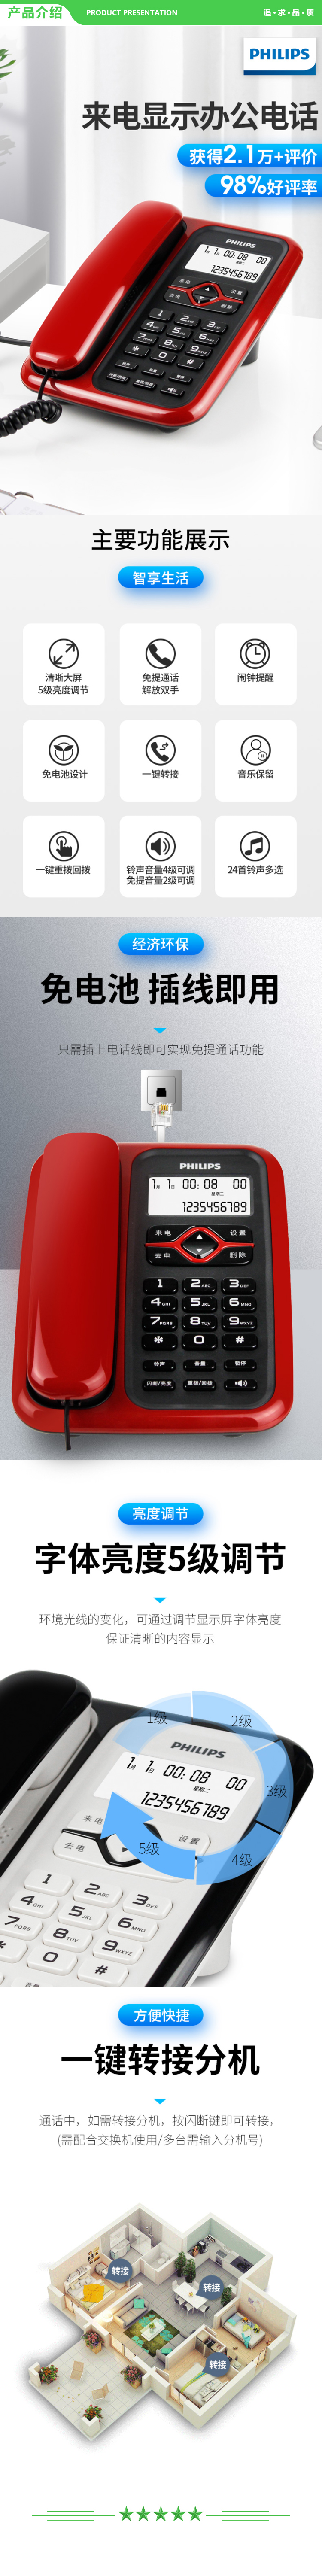 飞利浦 PHILIPS CORD020 电话机座机 固定电话 办公家用 免电池 插线即用 红色 .jpg